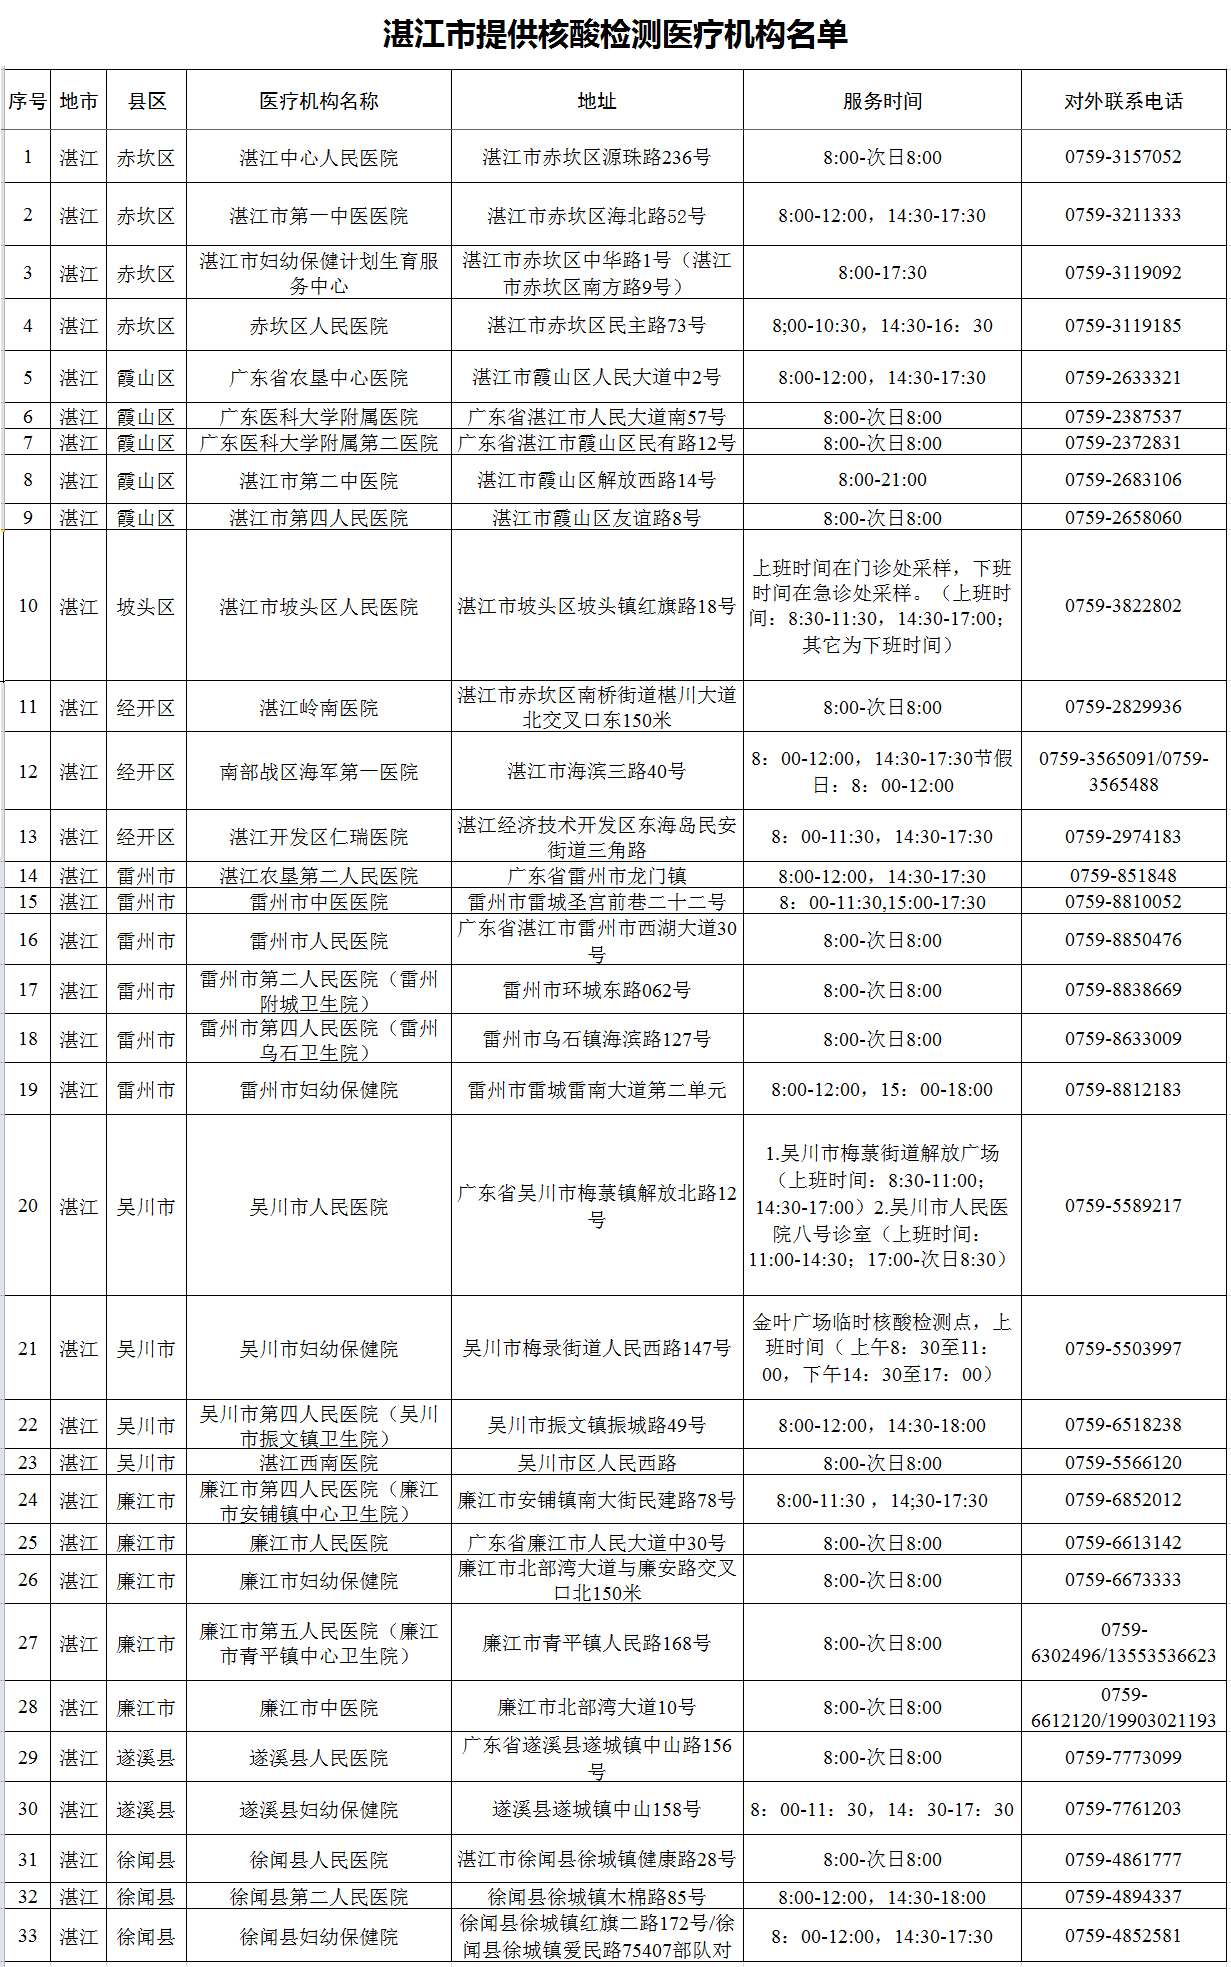 湛江市提供核酸检测医疗机构名单.jpg